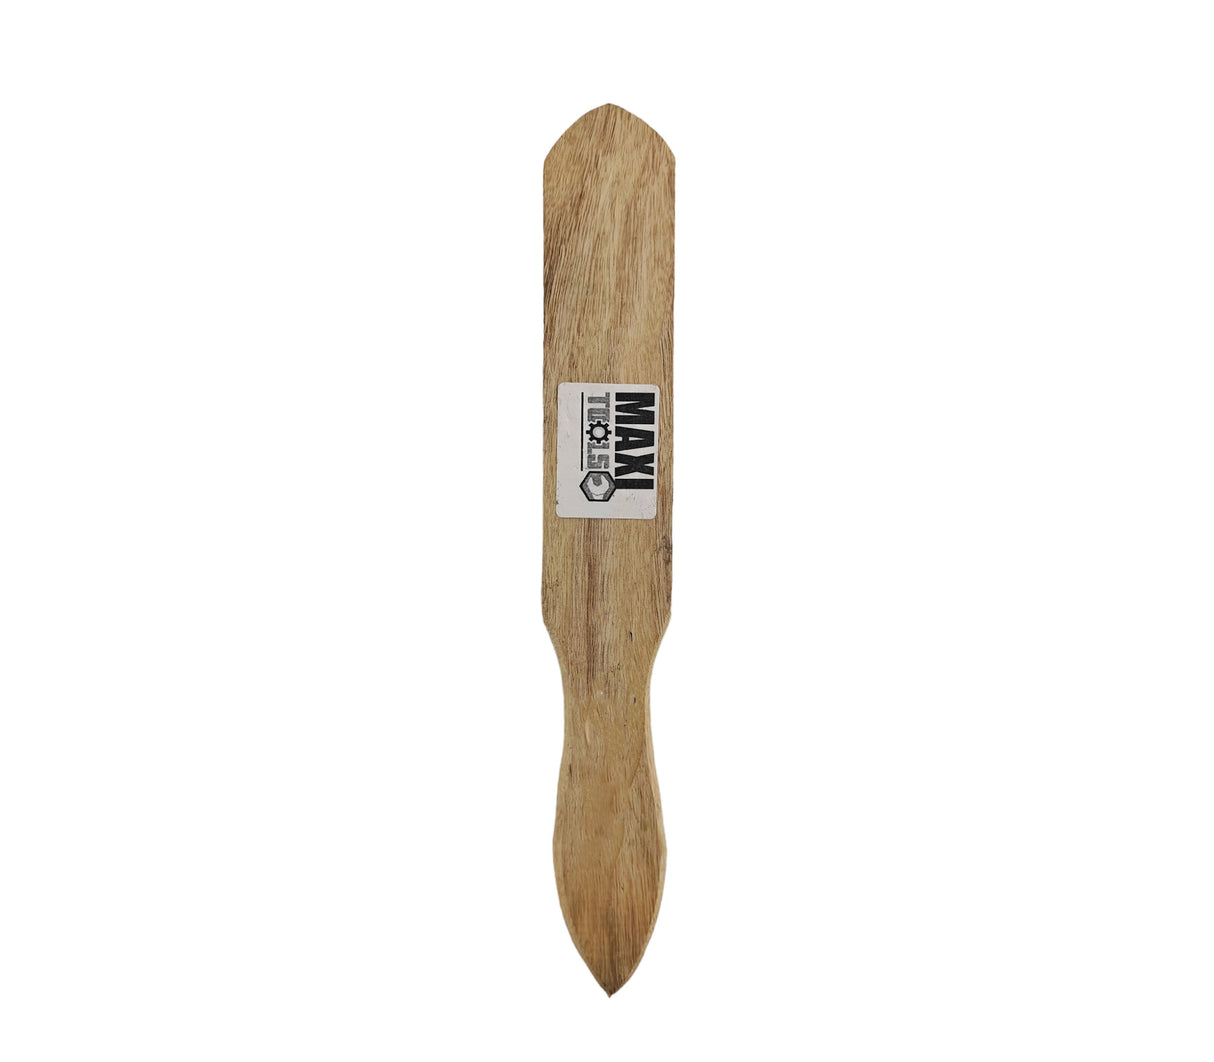 Cepillo de alambre madera 6x15x10 Cod.5-264 Maxi Tools